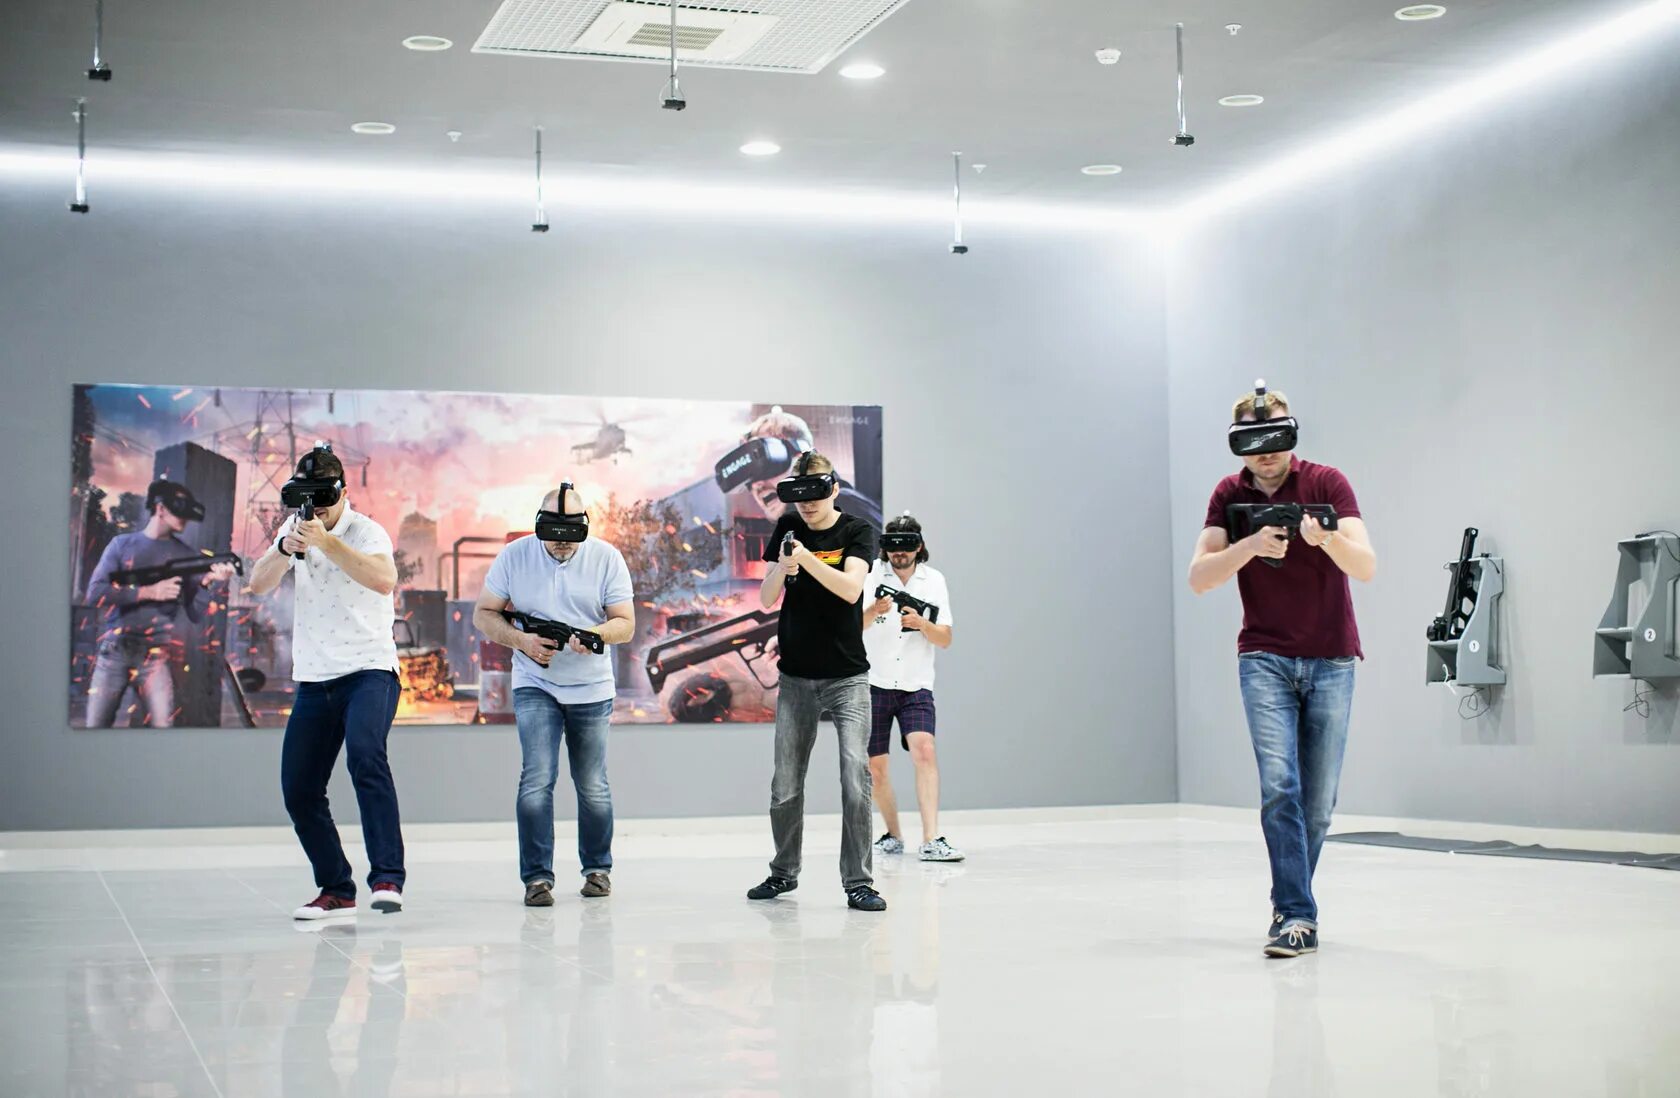 Парк виртуальных развлечений. Парк виртуальной реальности (VR парк). Парк развлечений engage VR. Виртуальная реальность в развлечениях. Виртуальная реальность в парке.